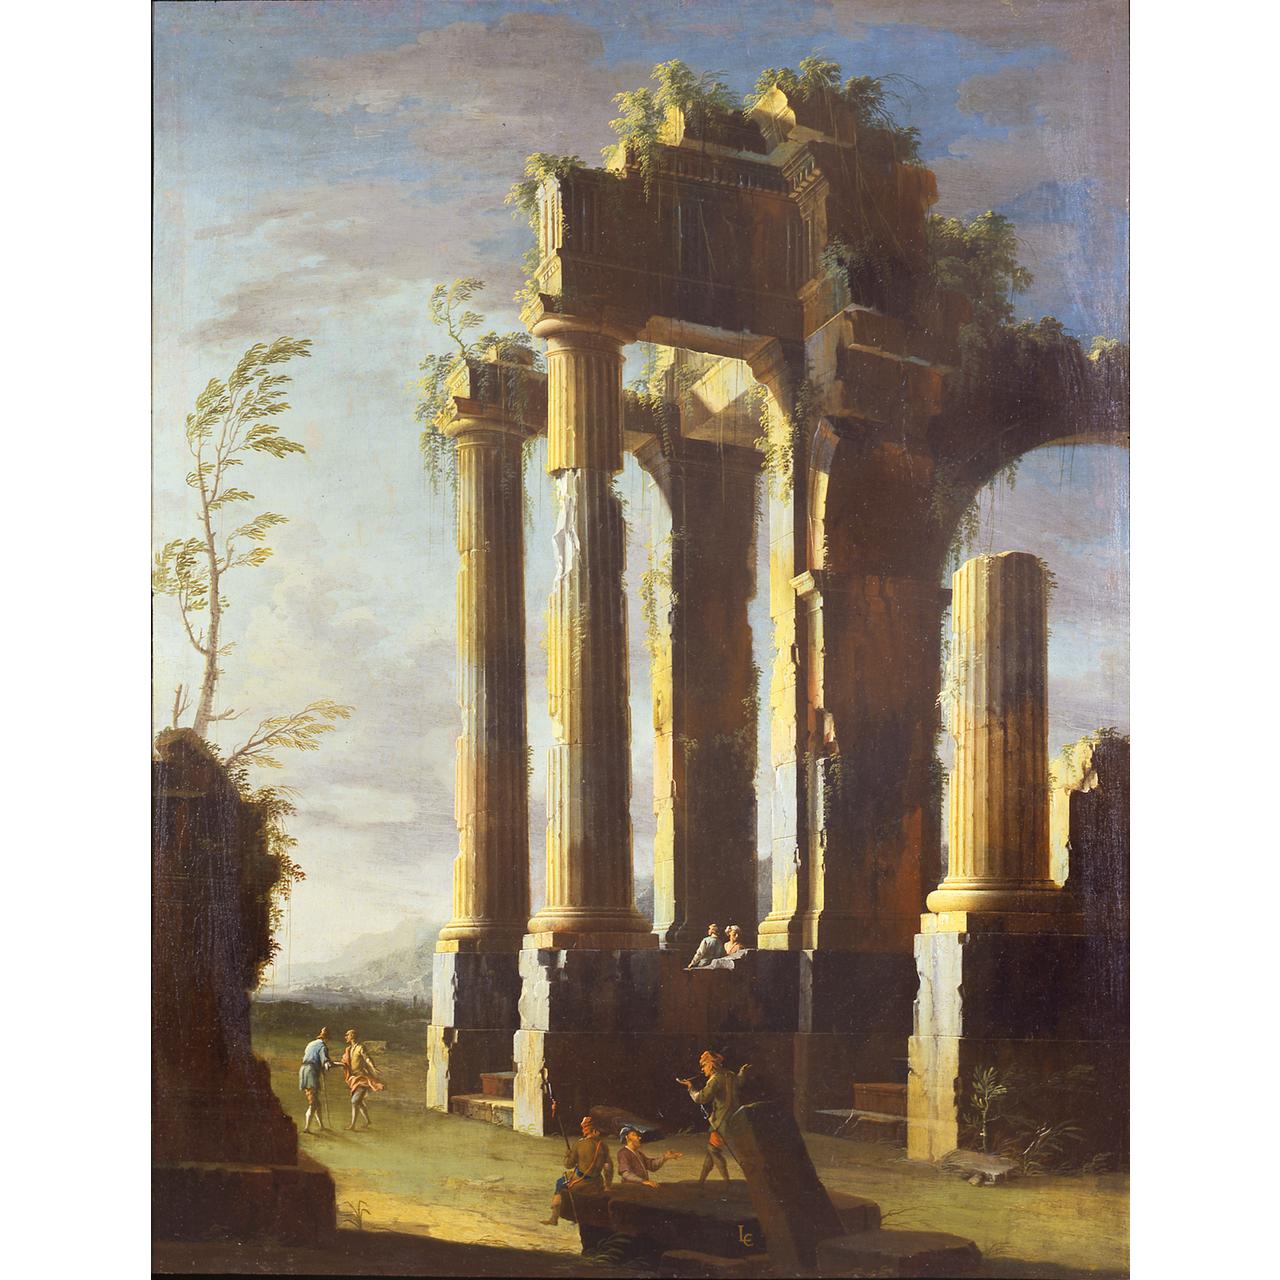 Dipinto: Capriccio con rovine antiche e figure, crepuscolo (II)